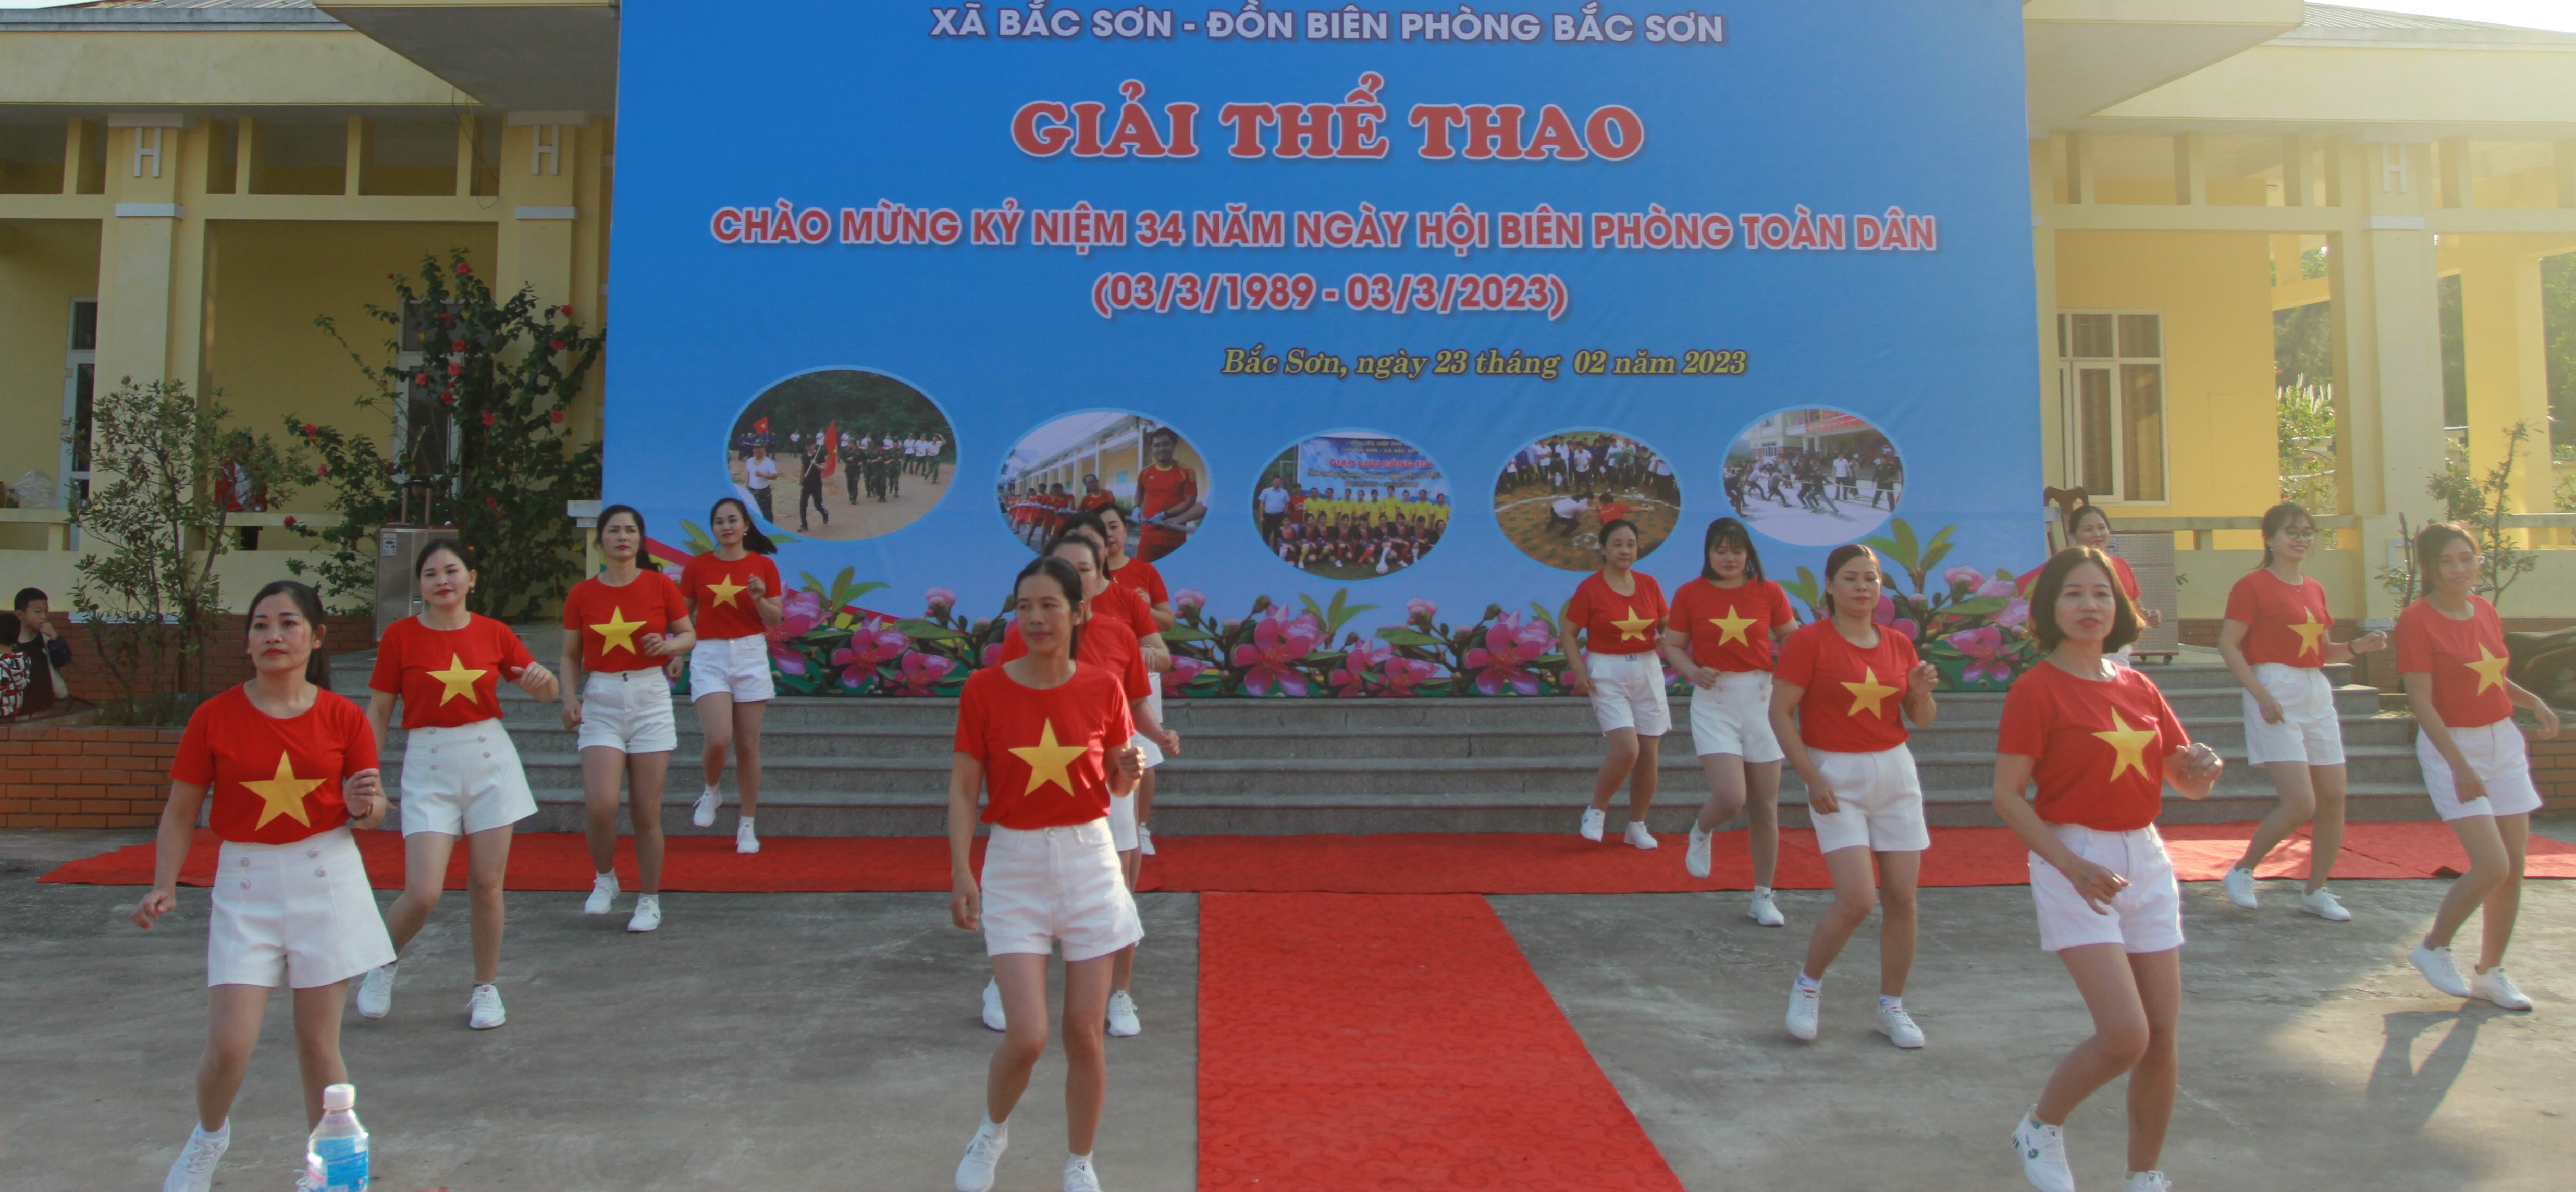 Chị em phụ nữ xã Bắc Sơn biểu diễn dân vũ trong Ngày hội.